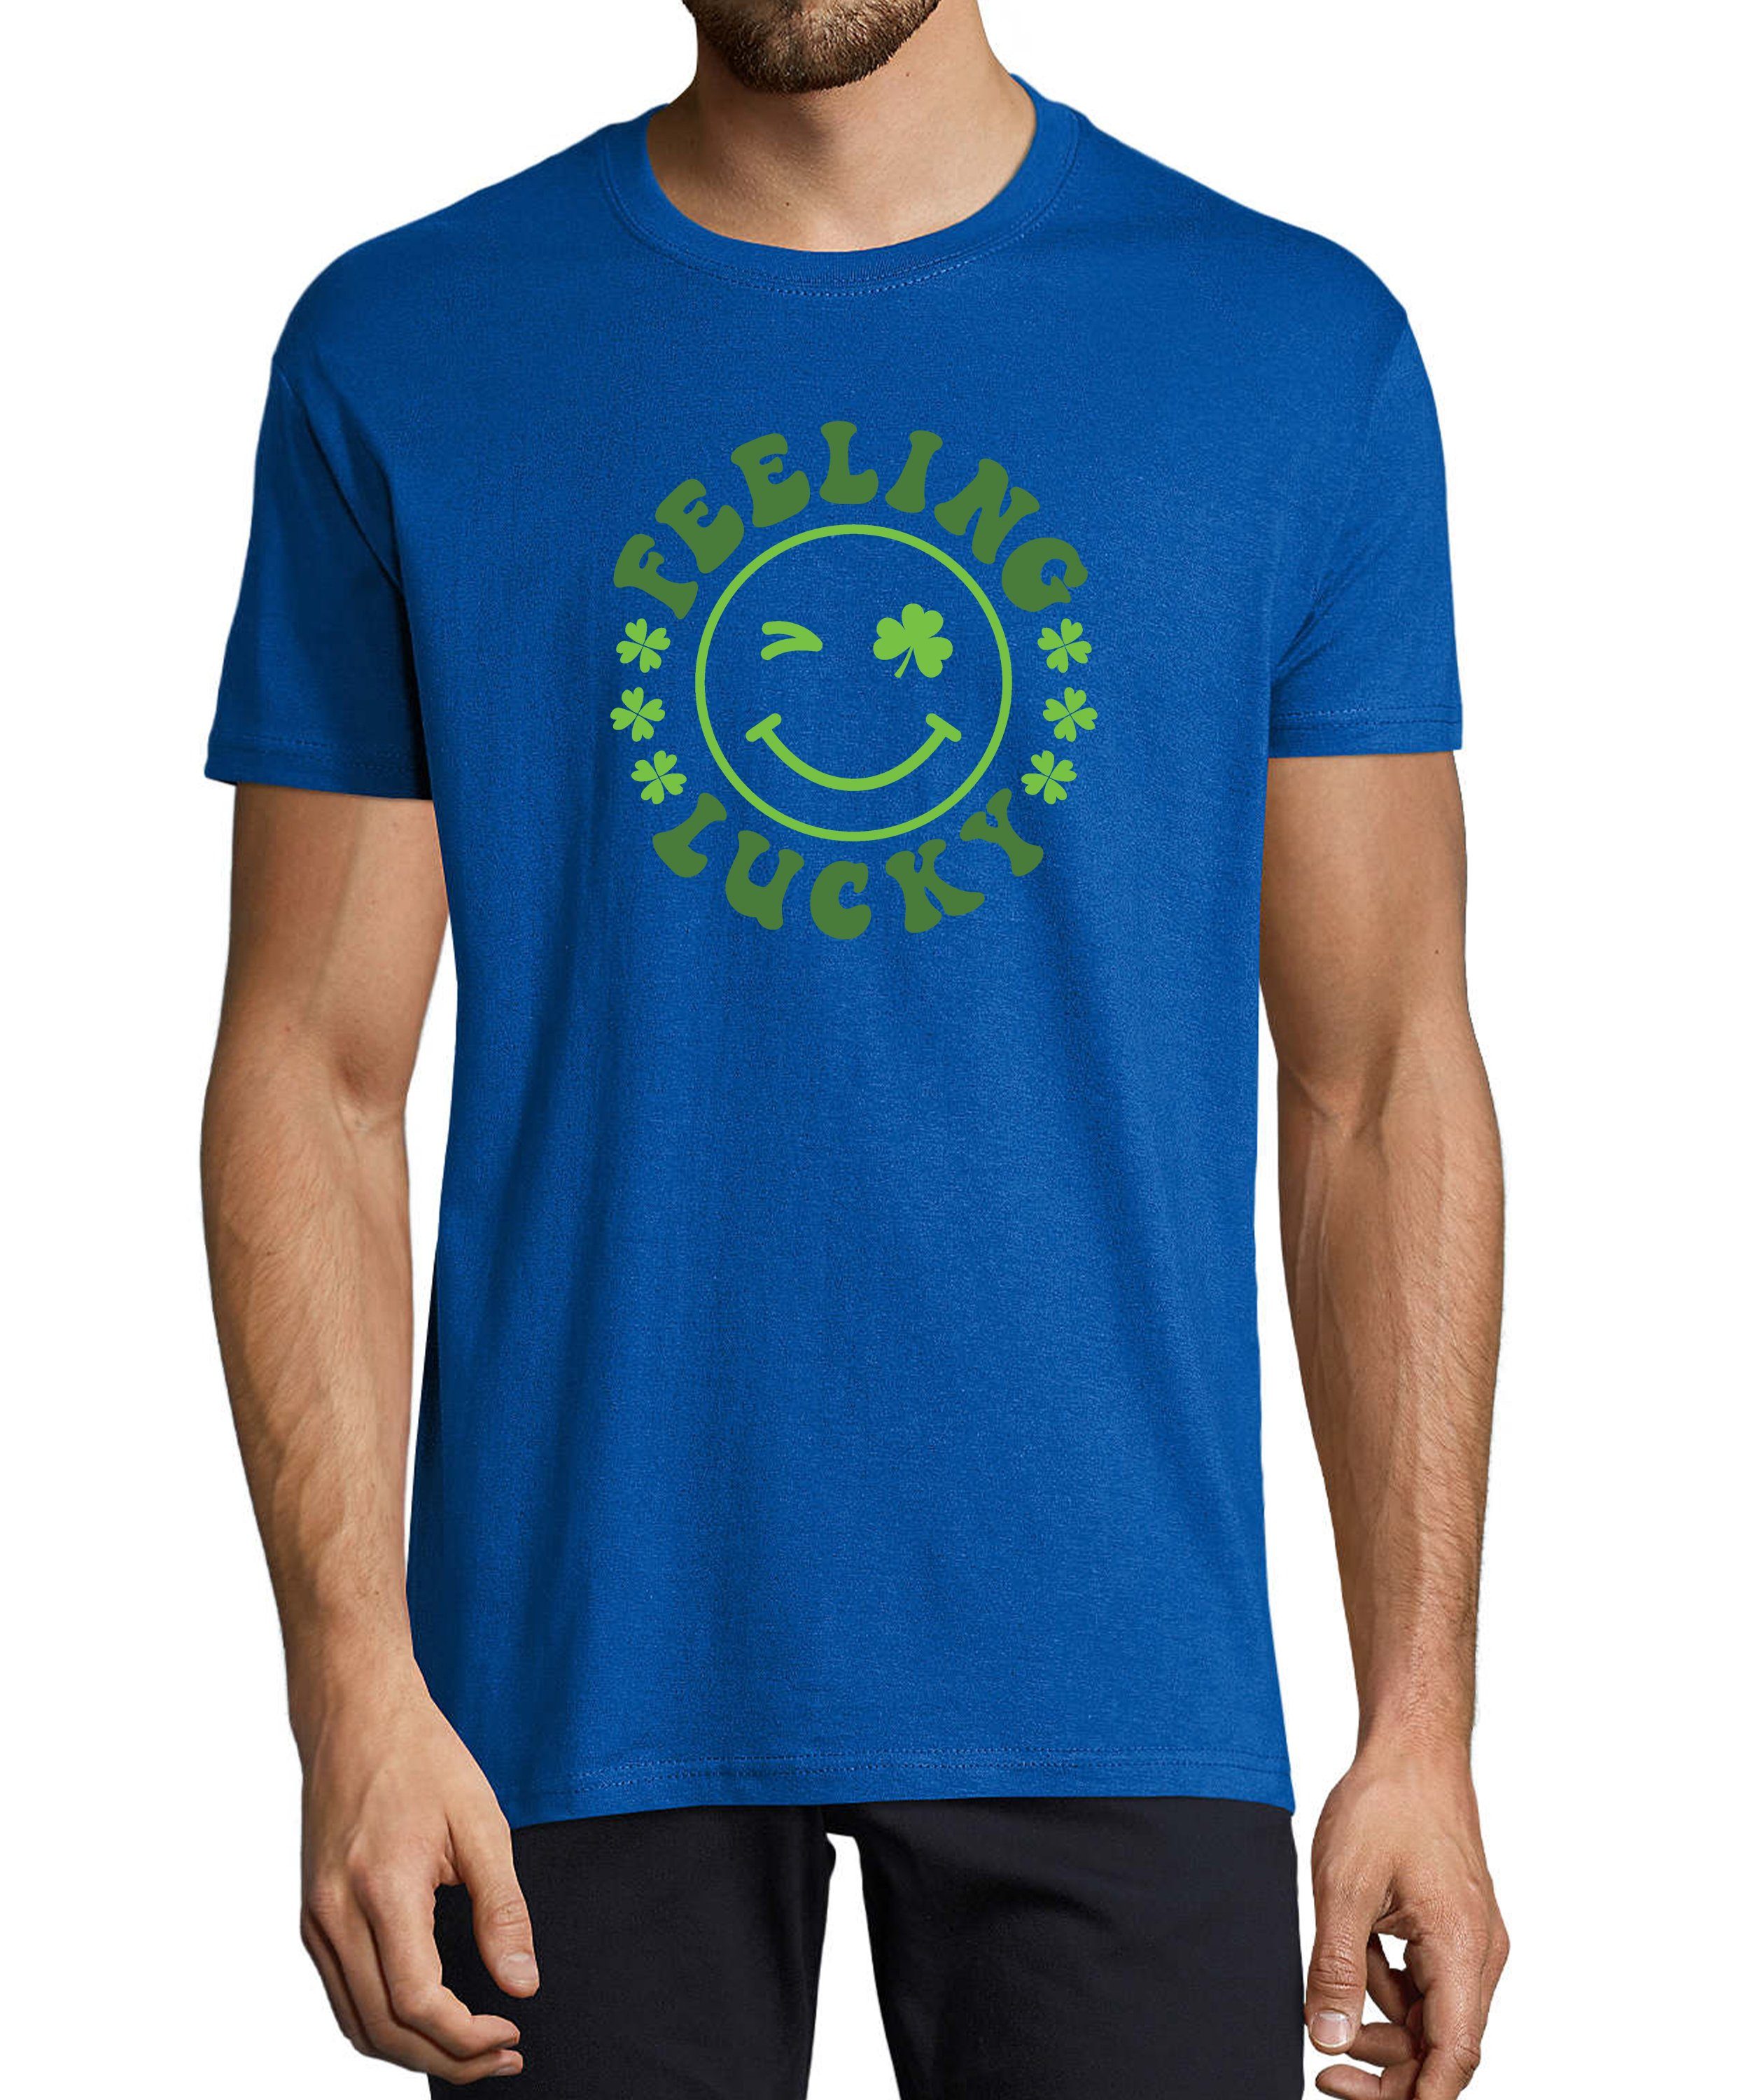 MyDesign24 T-Shirt Herren Smiley Print Shirt - Zwinkernder Smiley mit Kleeblättern Baumwollshirt mit Aufdruck Regular Fit, i295 royal blau